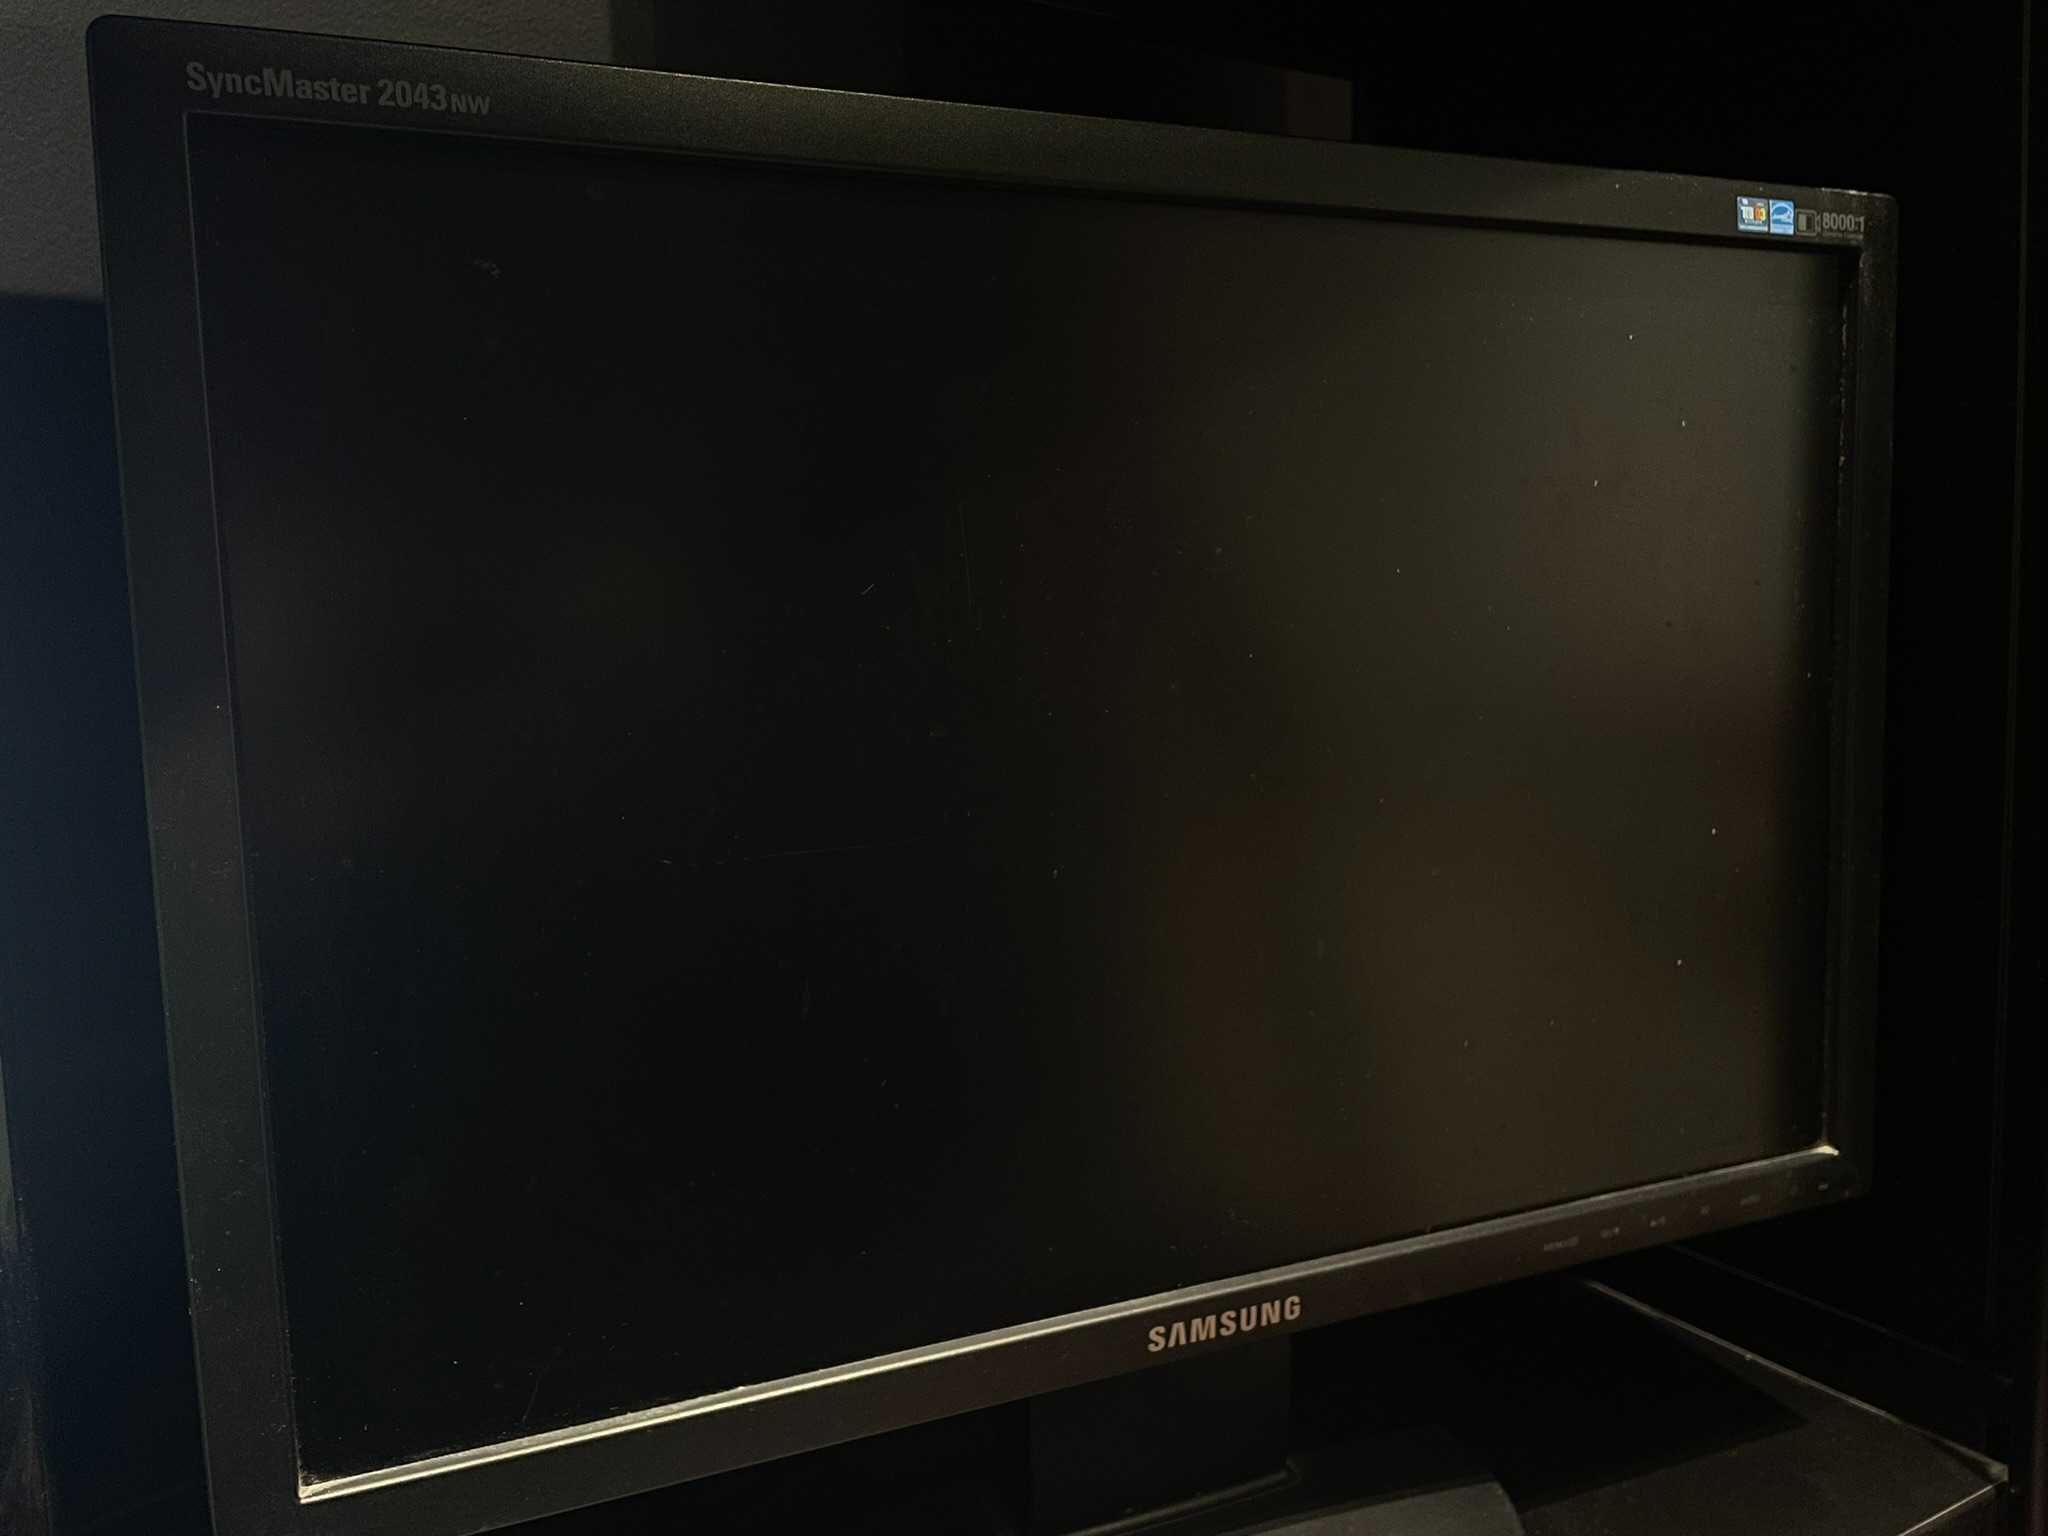 20 calowy monitor Samsung SyncMaster 2043nw